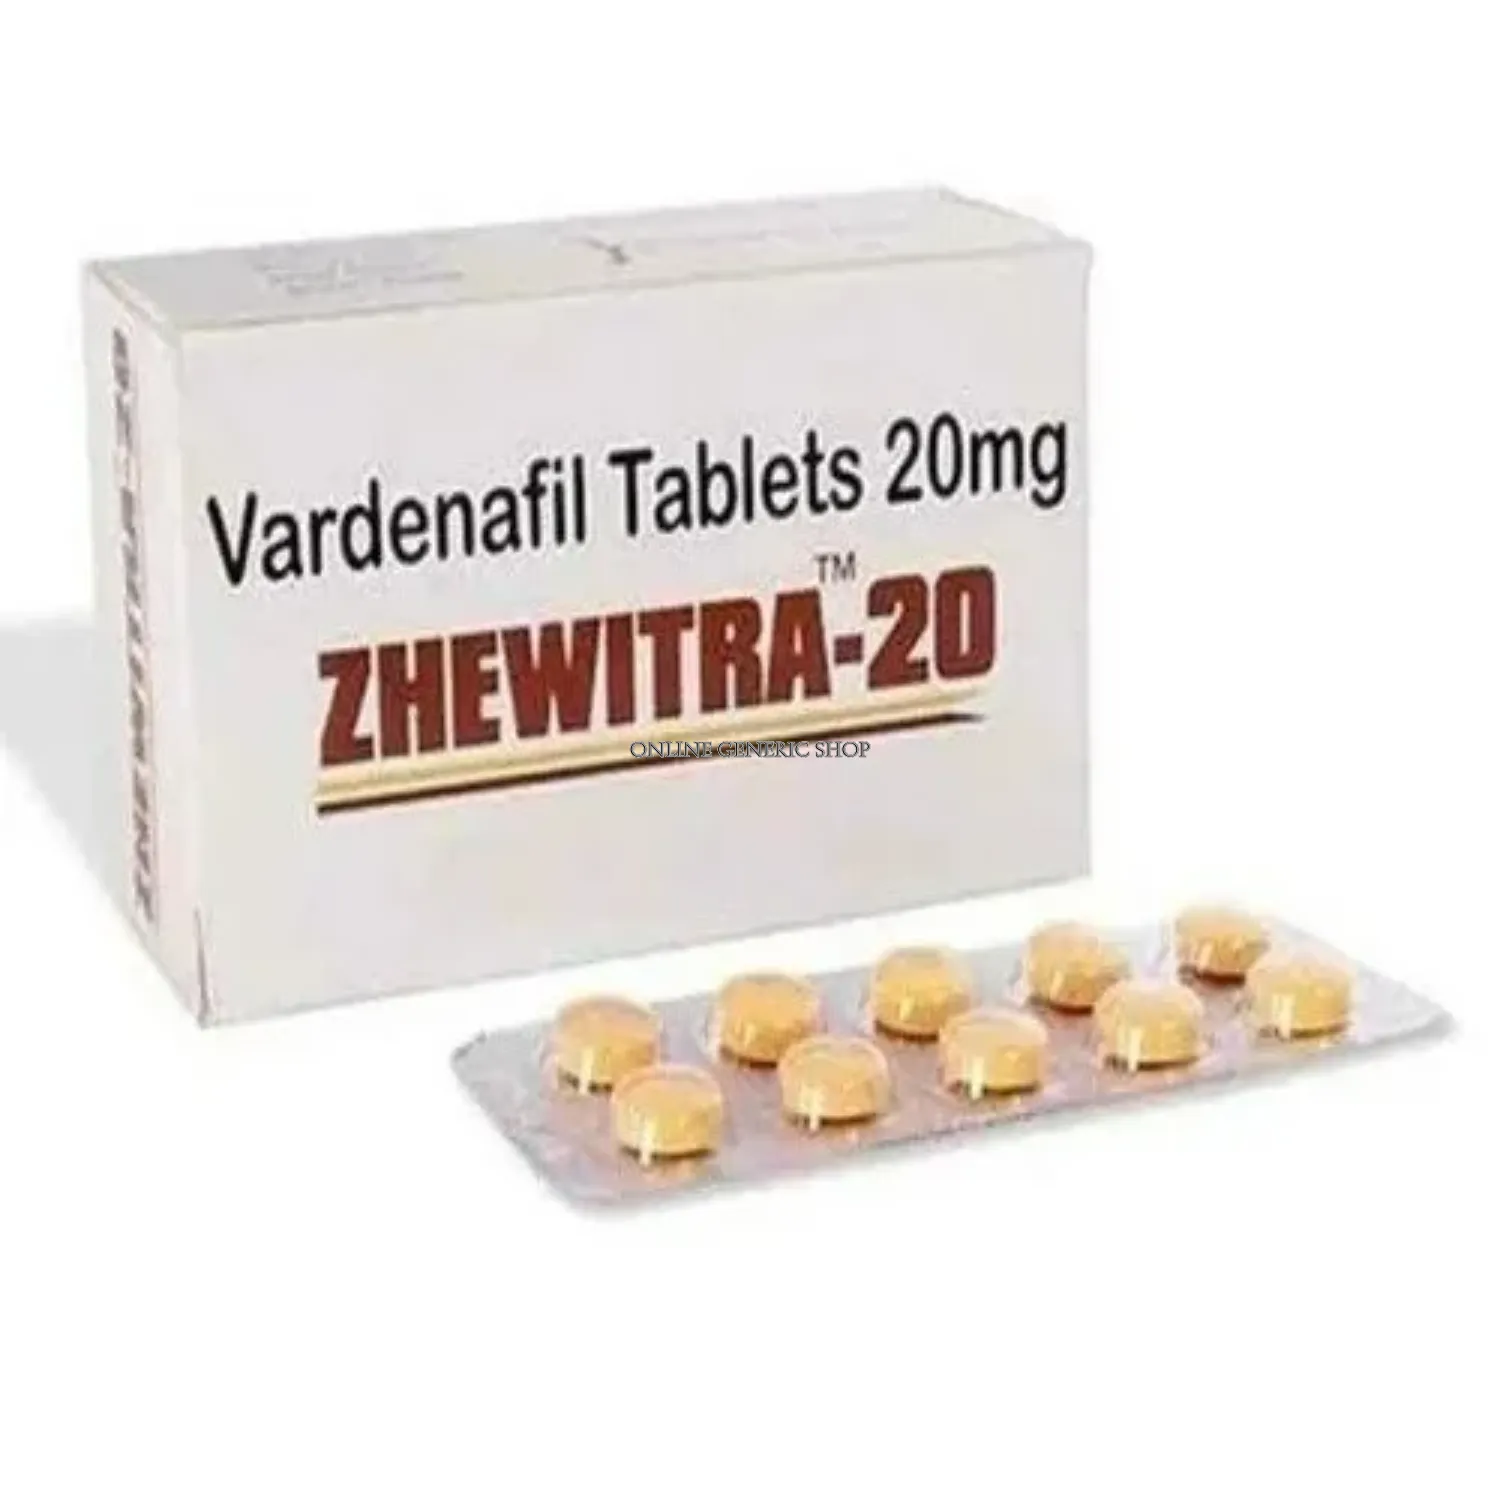 zhewitra-20-mg                    